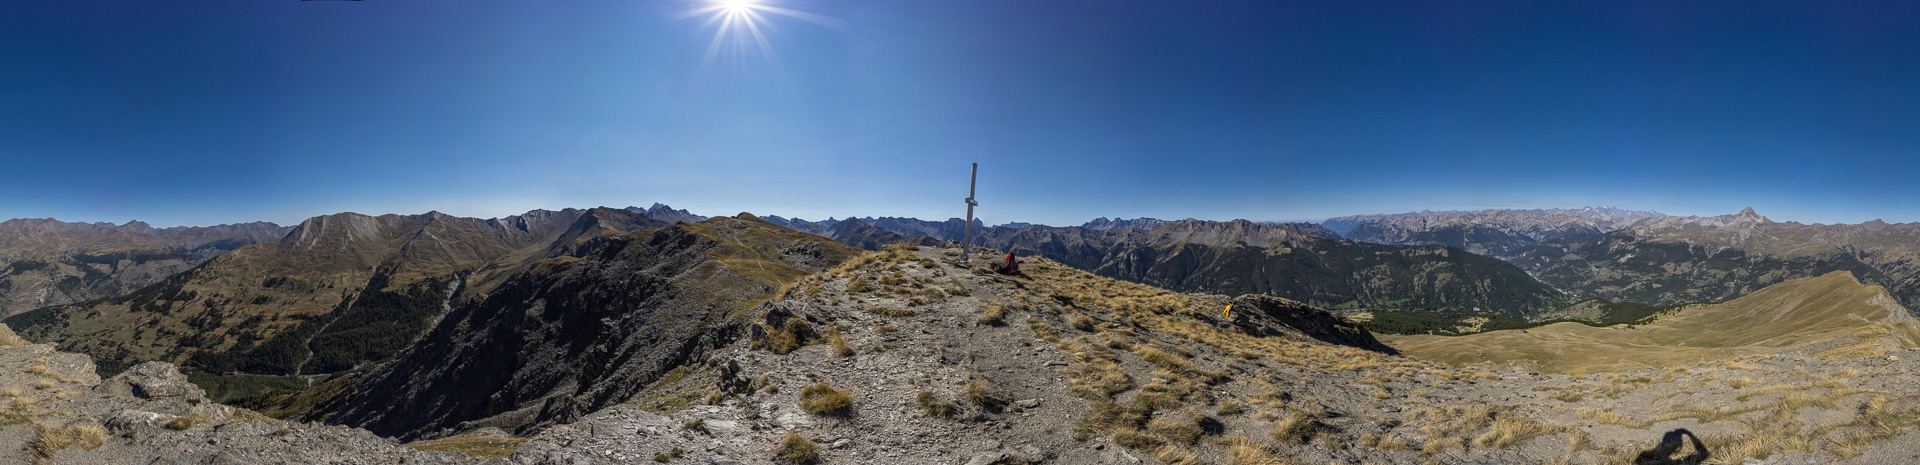 Gipfelpanorama mit Monte Viso und Rochebrune.